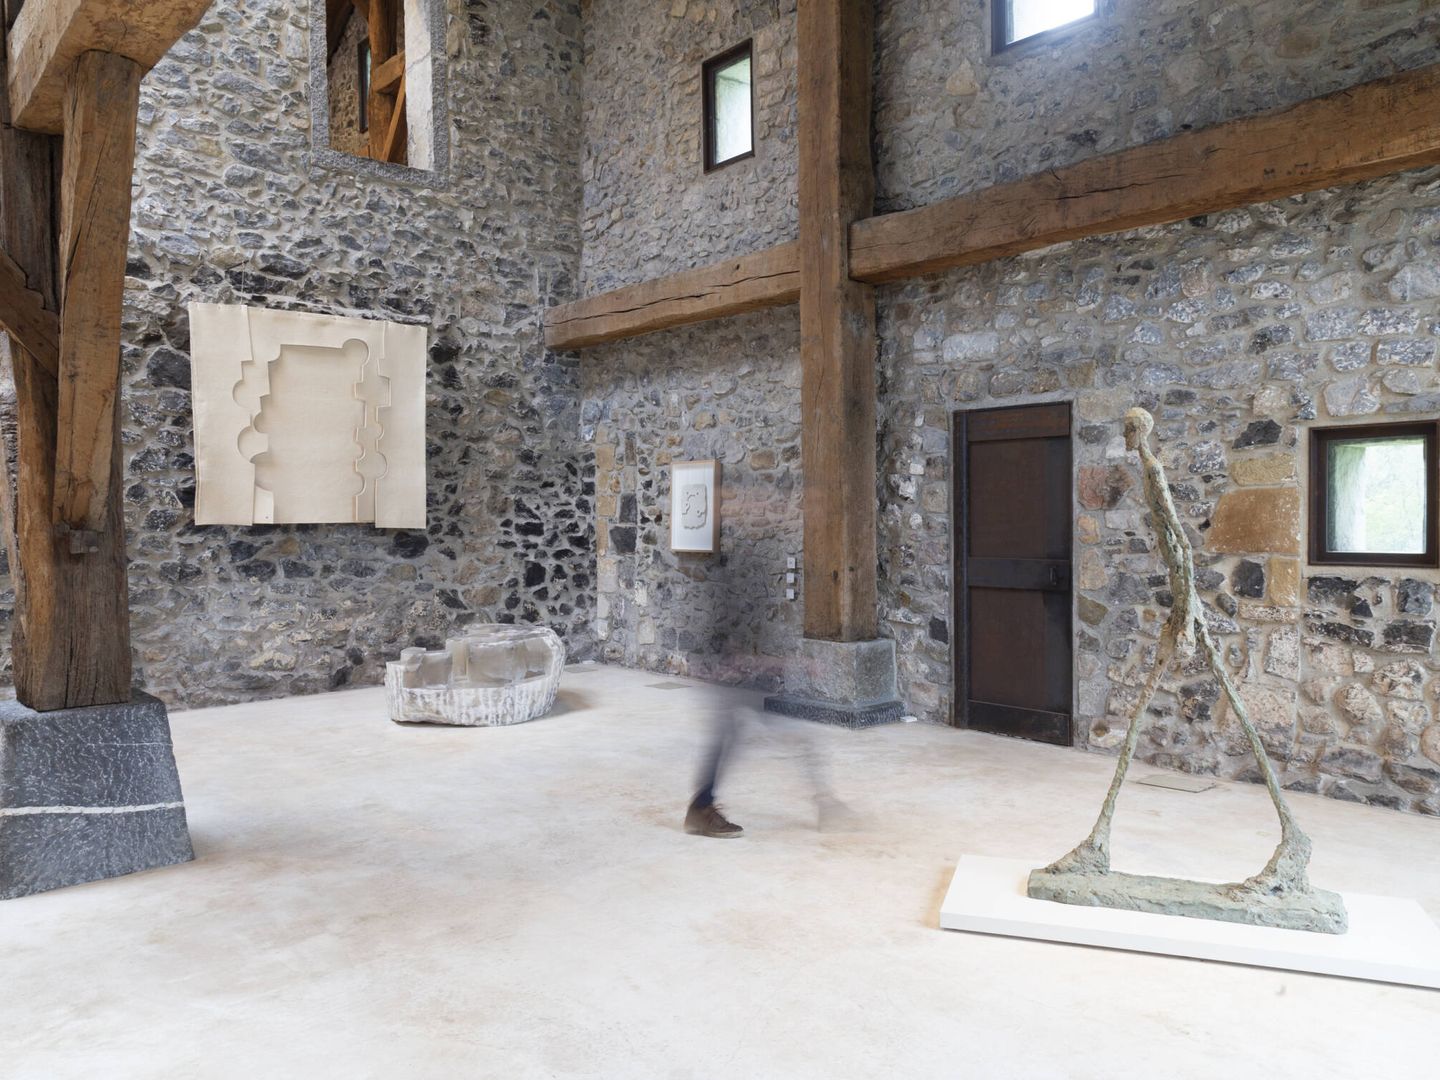 Vista de la exposición 'Universo Maeght' en Chillida Leku con El hombre que anda, de Giacometti. (Telmo Sánchez Ugalde) 